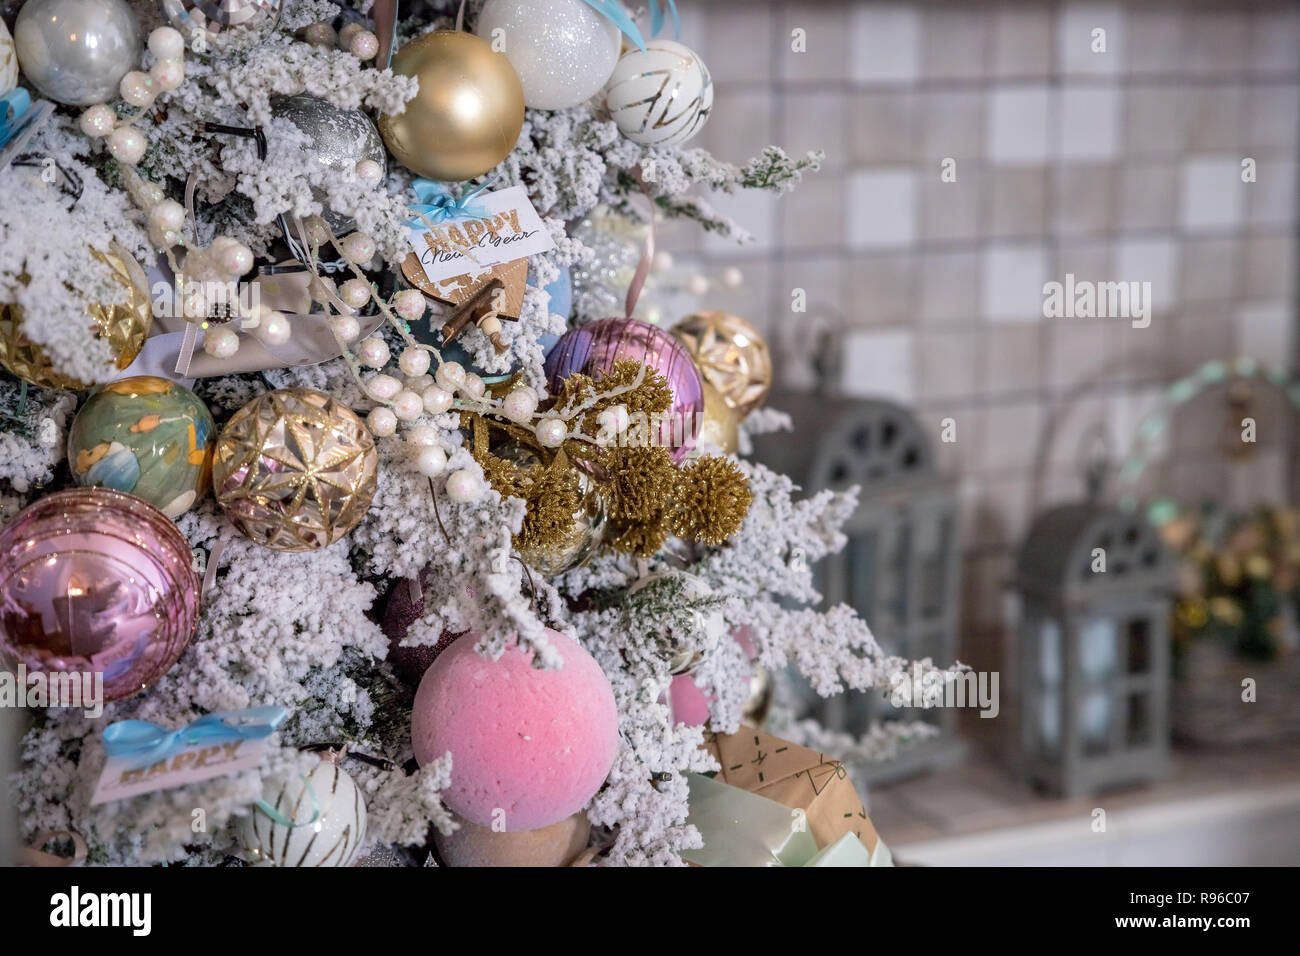 Albero Di Natale Bianco Rosa E Argento.Close Up Di Decorazione Per Albero Di Natale Con Oro Argento Rosa E Bianco Tinsel Glitter